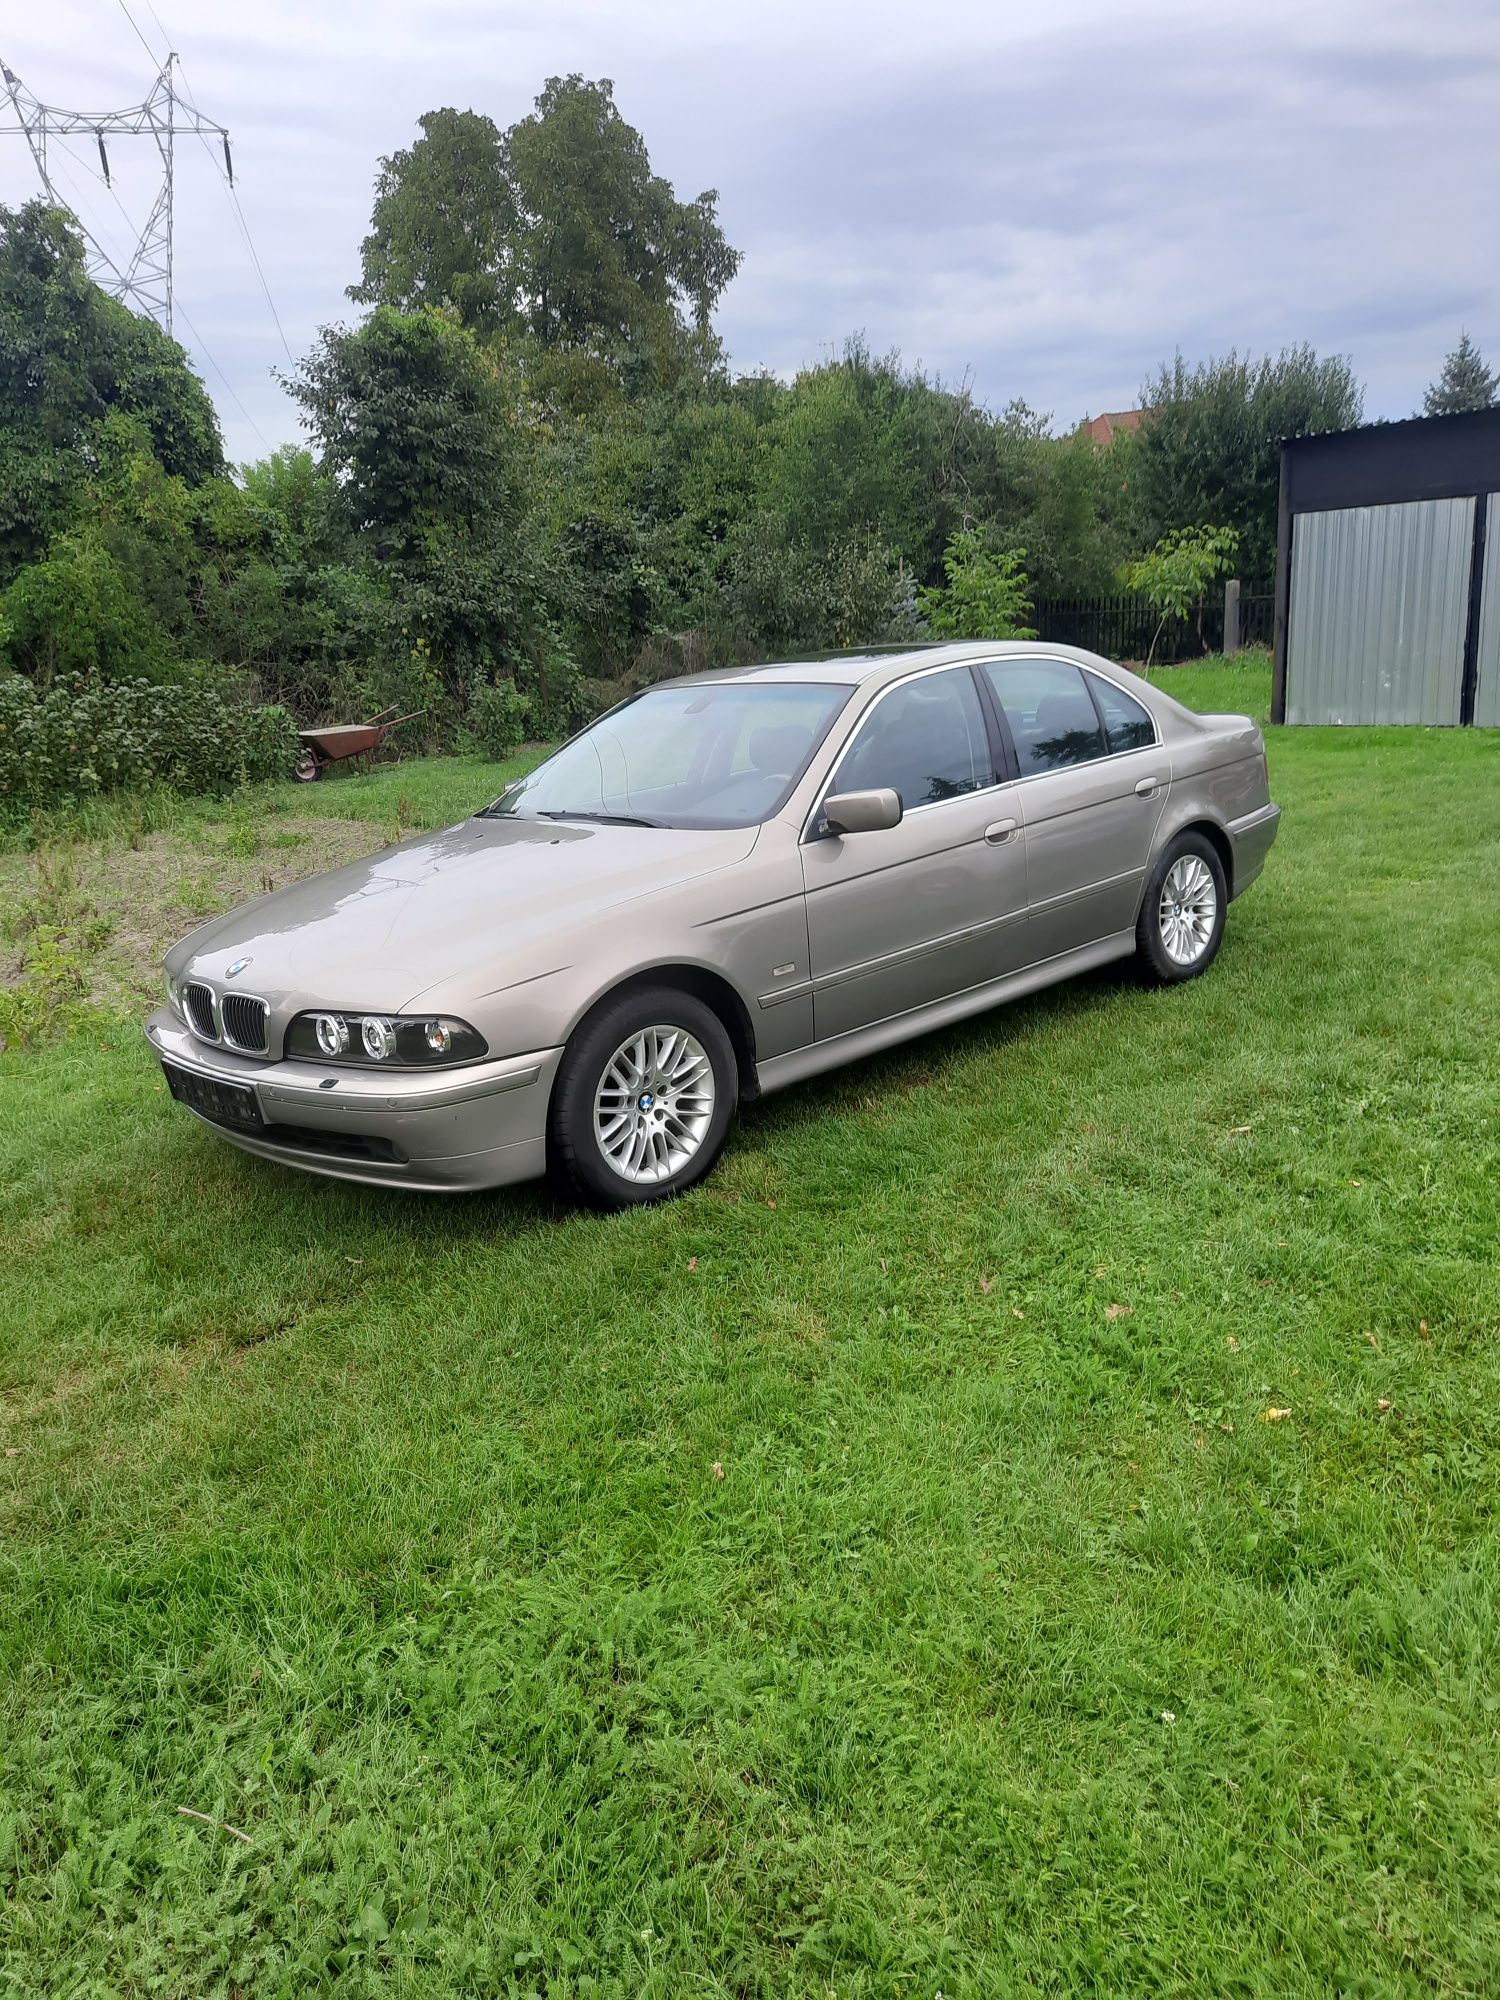 Sprzedam BMW E39 seria 5 z 2001r- 2.5 benzyna-192 KM.